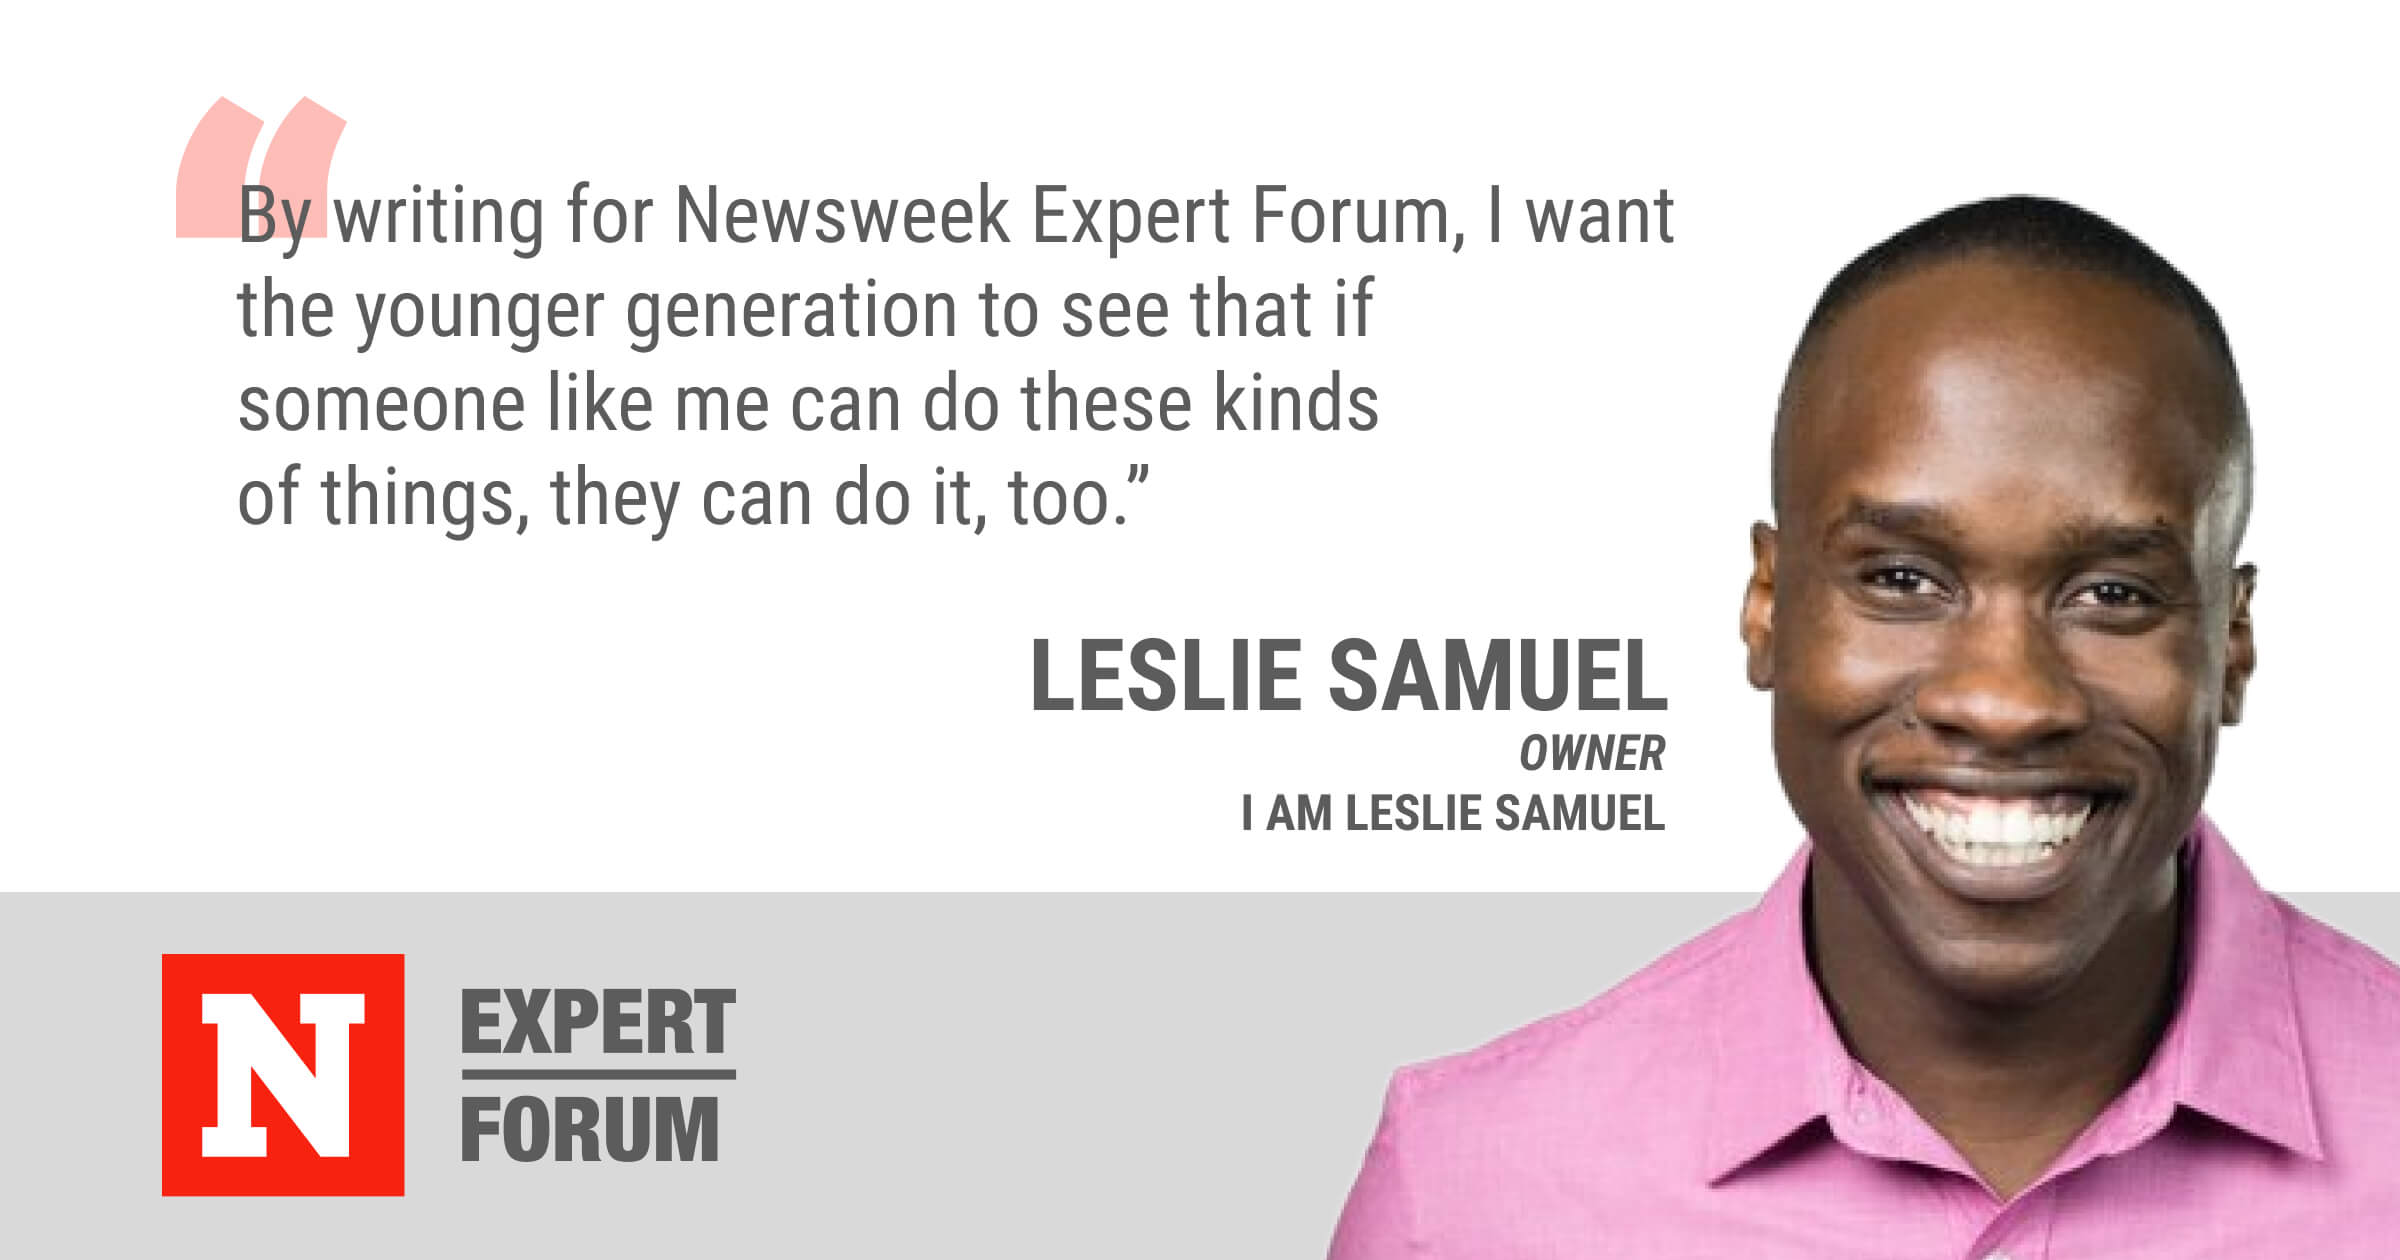 Newsweek Expert Forum member Leslie Samuel